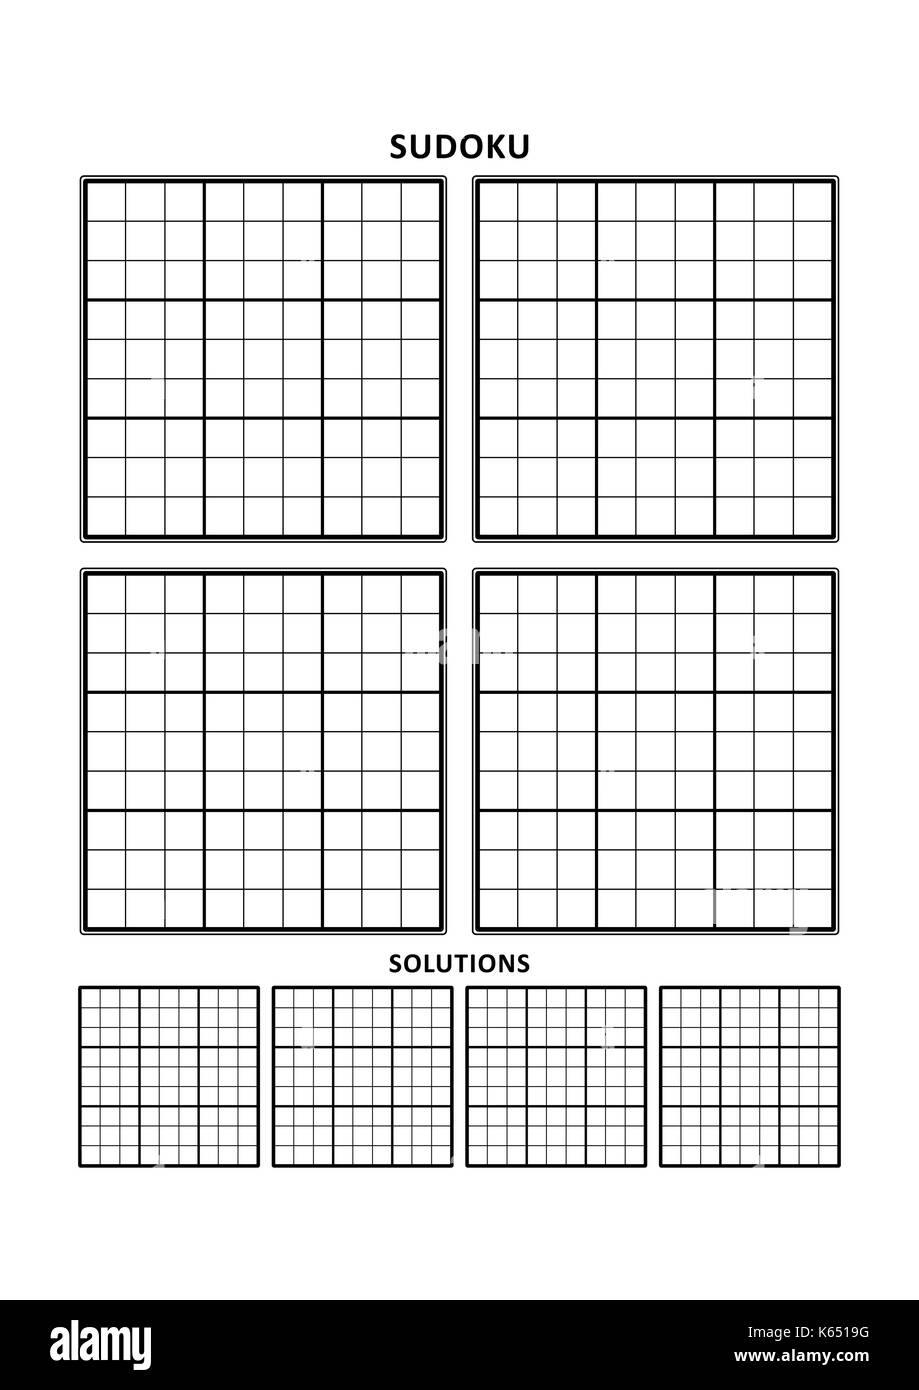 Sudoku Vorlage, vier Rastern mit Lösungen auf A4- oder Letter-Format Seite  Stock-Vektorgrafik - Alamy